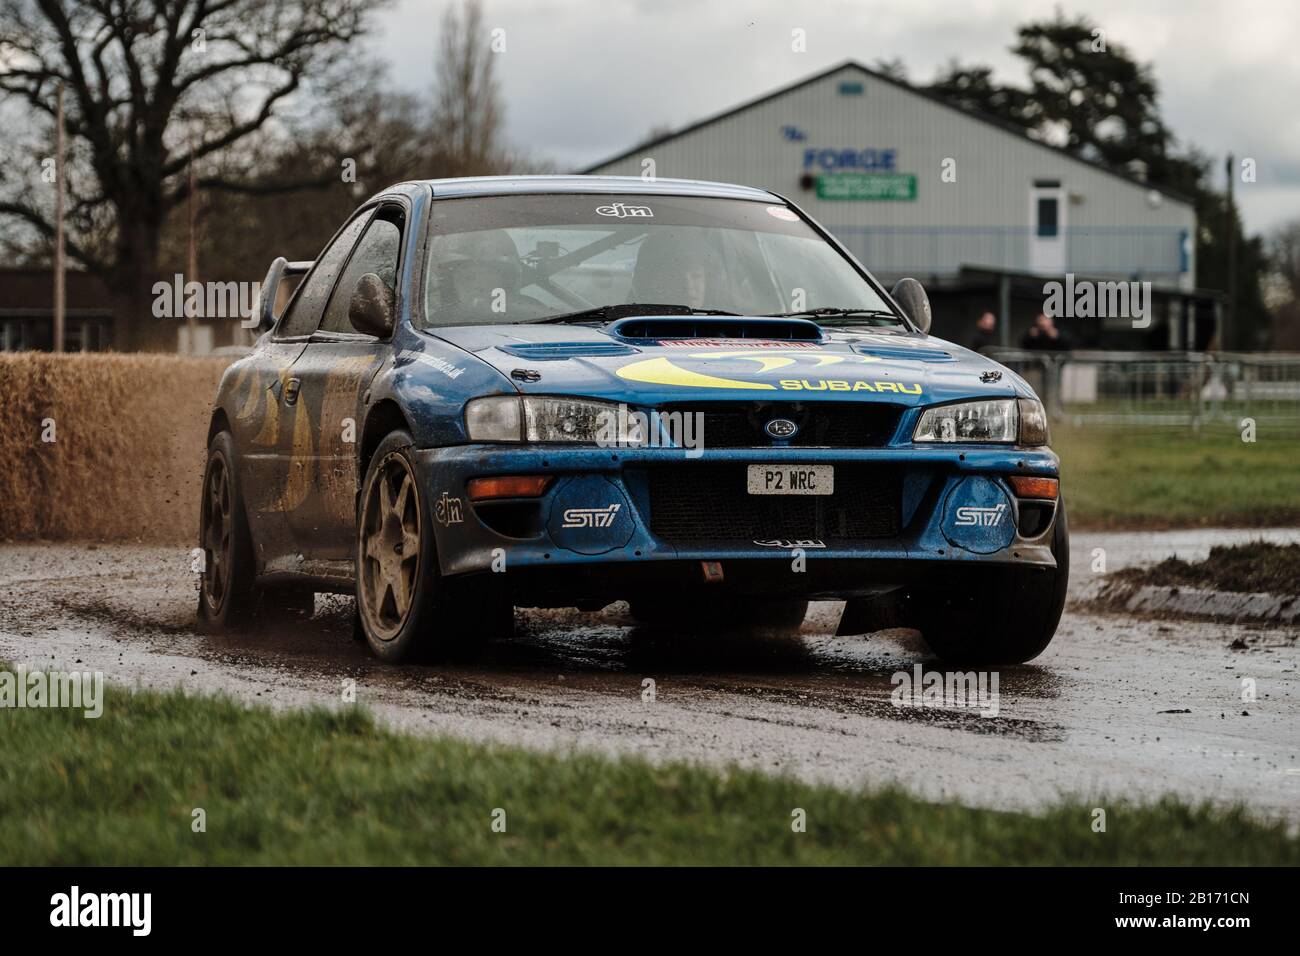 Stoneleigh Park, Warwickshire, Royaume-Uni. 23 février 2020. Le pilote de rallye Niall Moroney conduit la voiture de rallye Subaru Impreza S5 WRC pendant la course de 2020 Retro au circuit du parc Stoneleigh. Photo De Gergo Toth / Alay Live News Banque D'Images